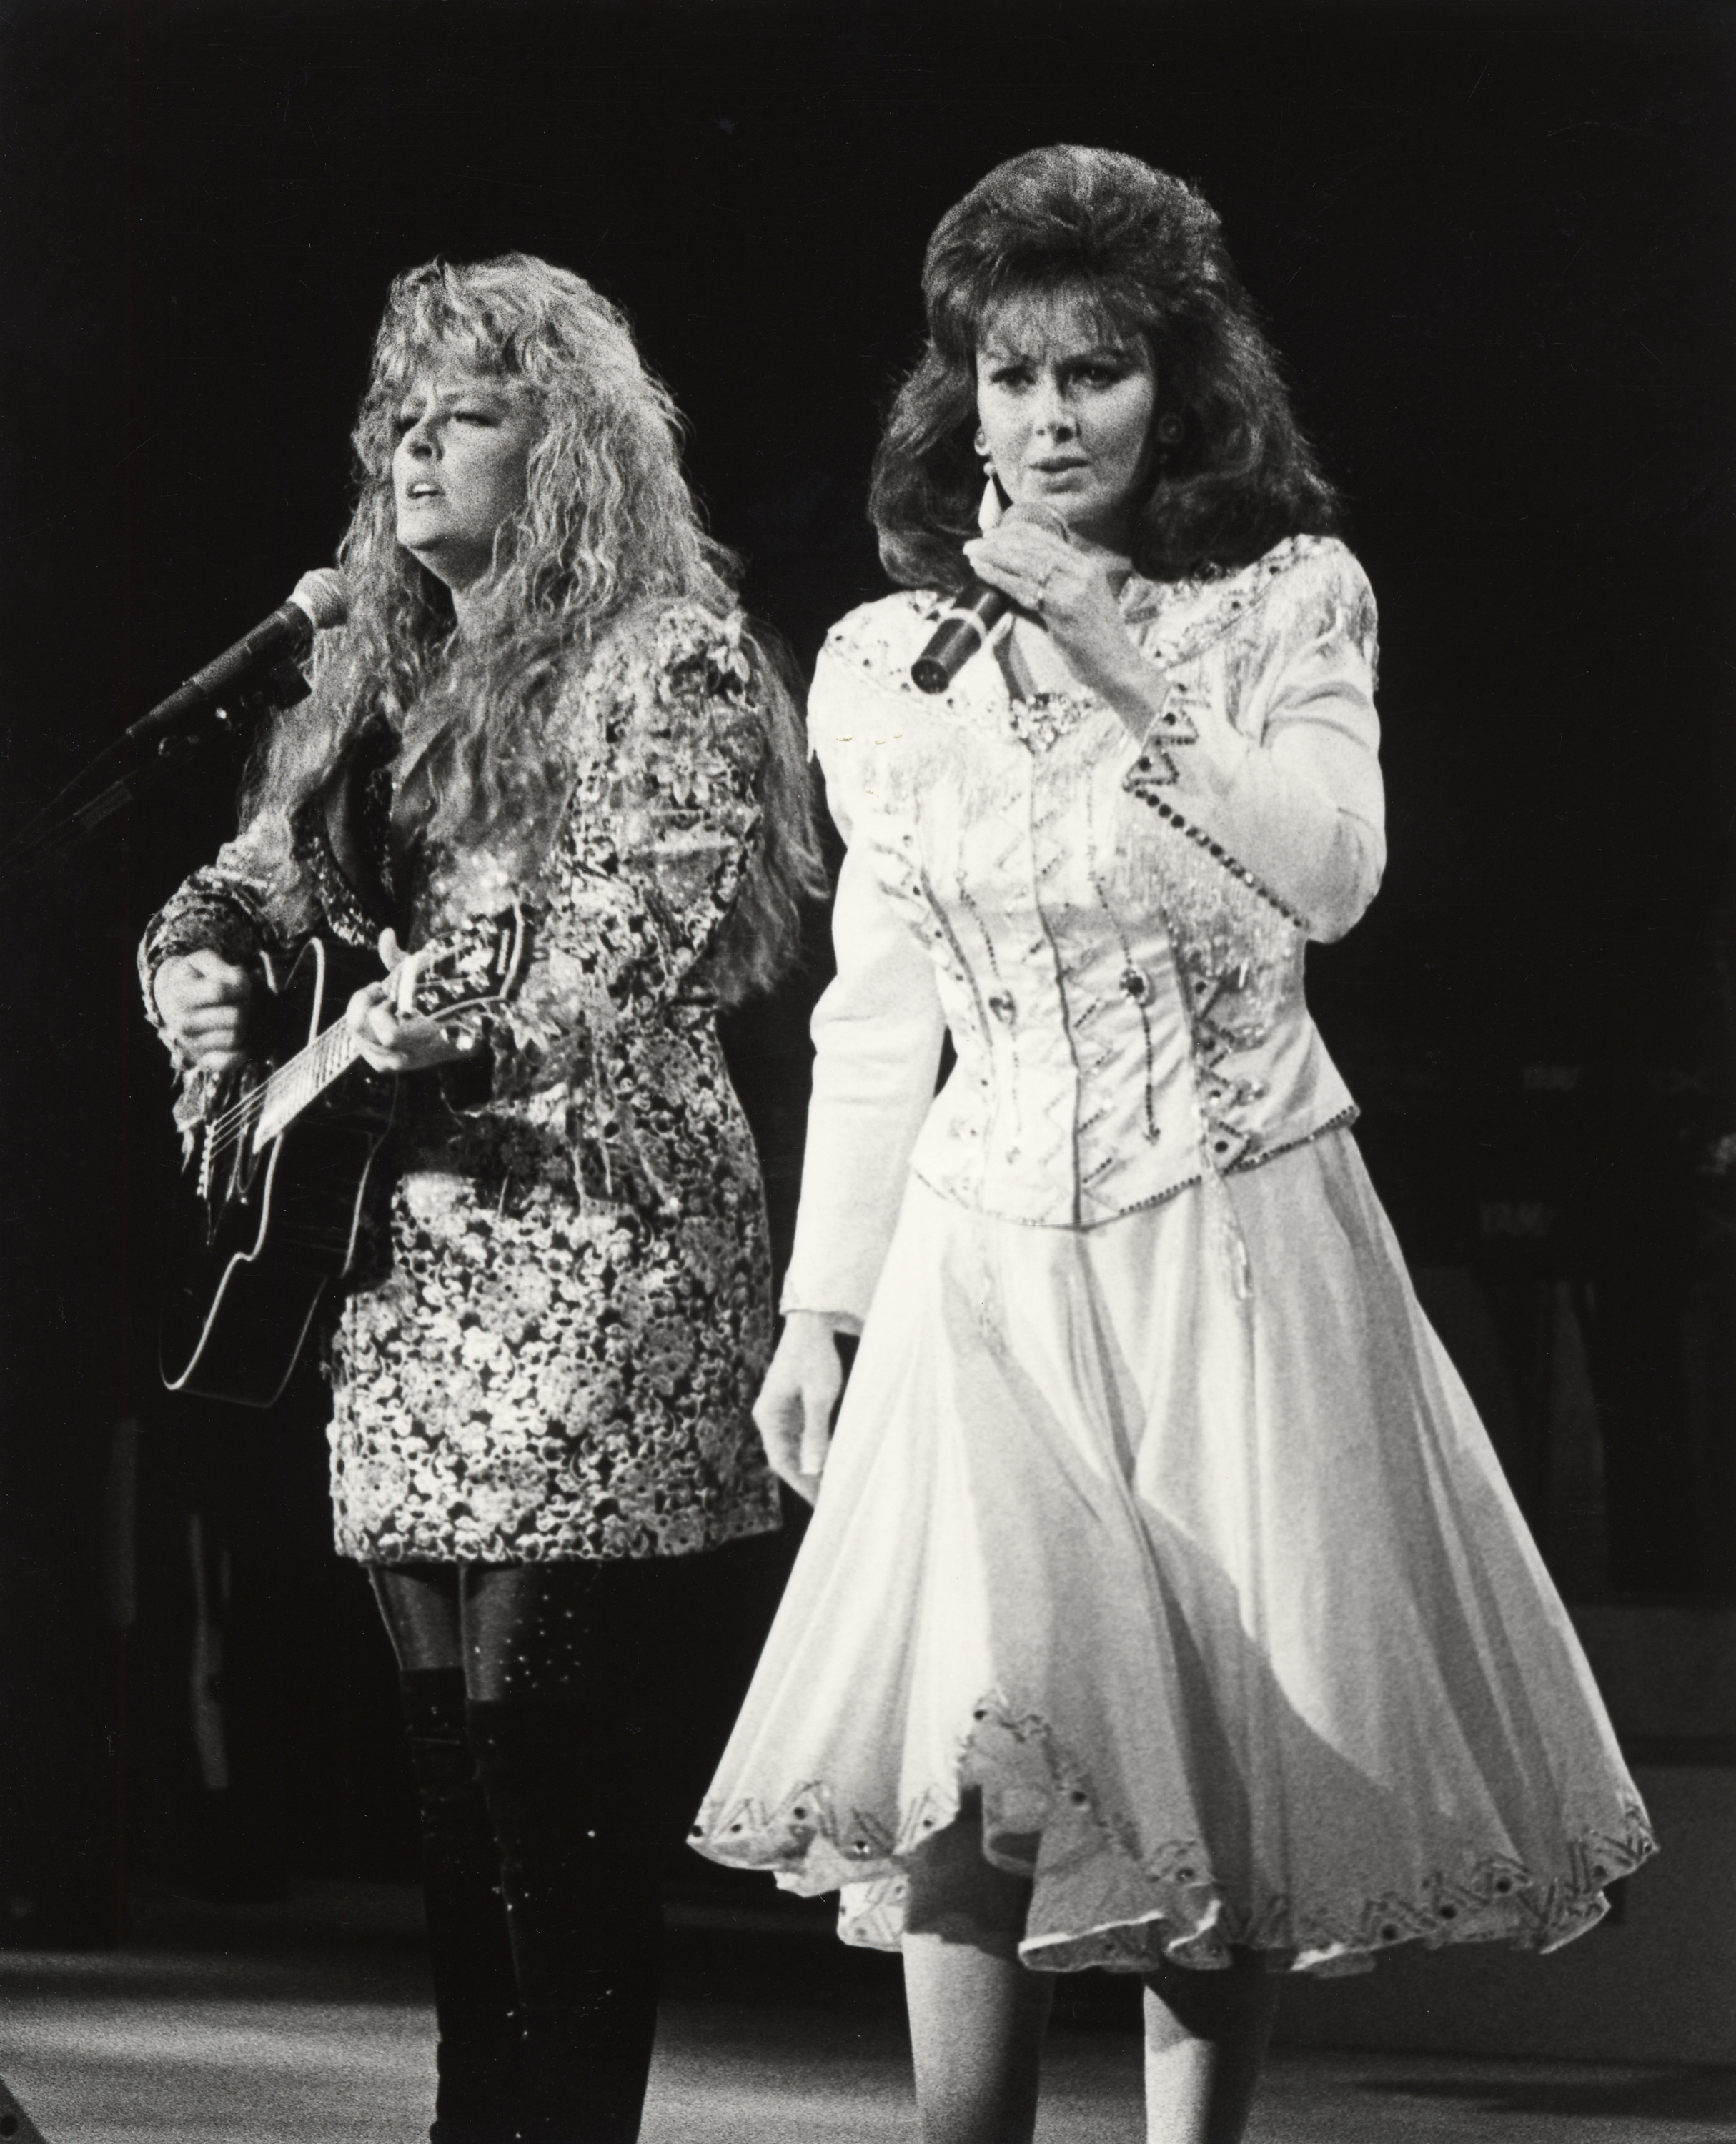 La fillette et sa mère se produisent lors d'un concert à Orange County, en Californie, le 23 juin 1991 | Source : Getty Images